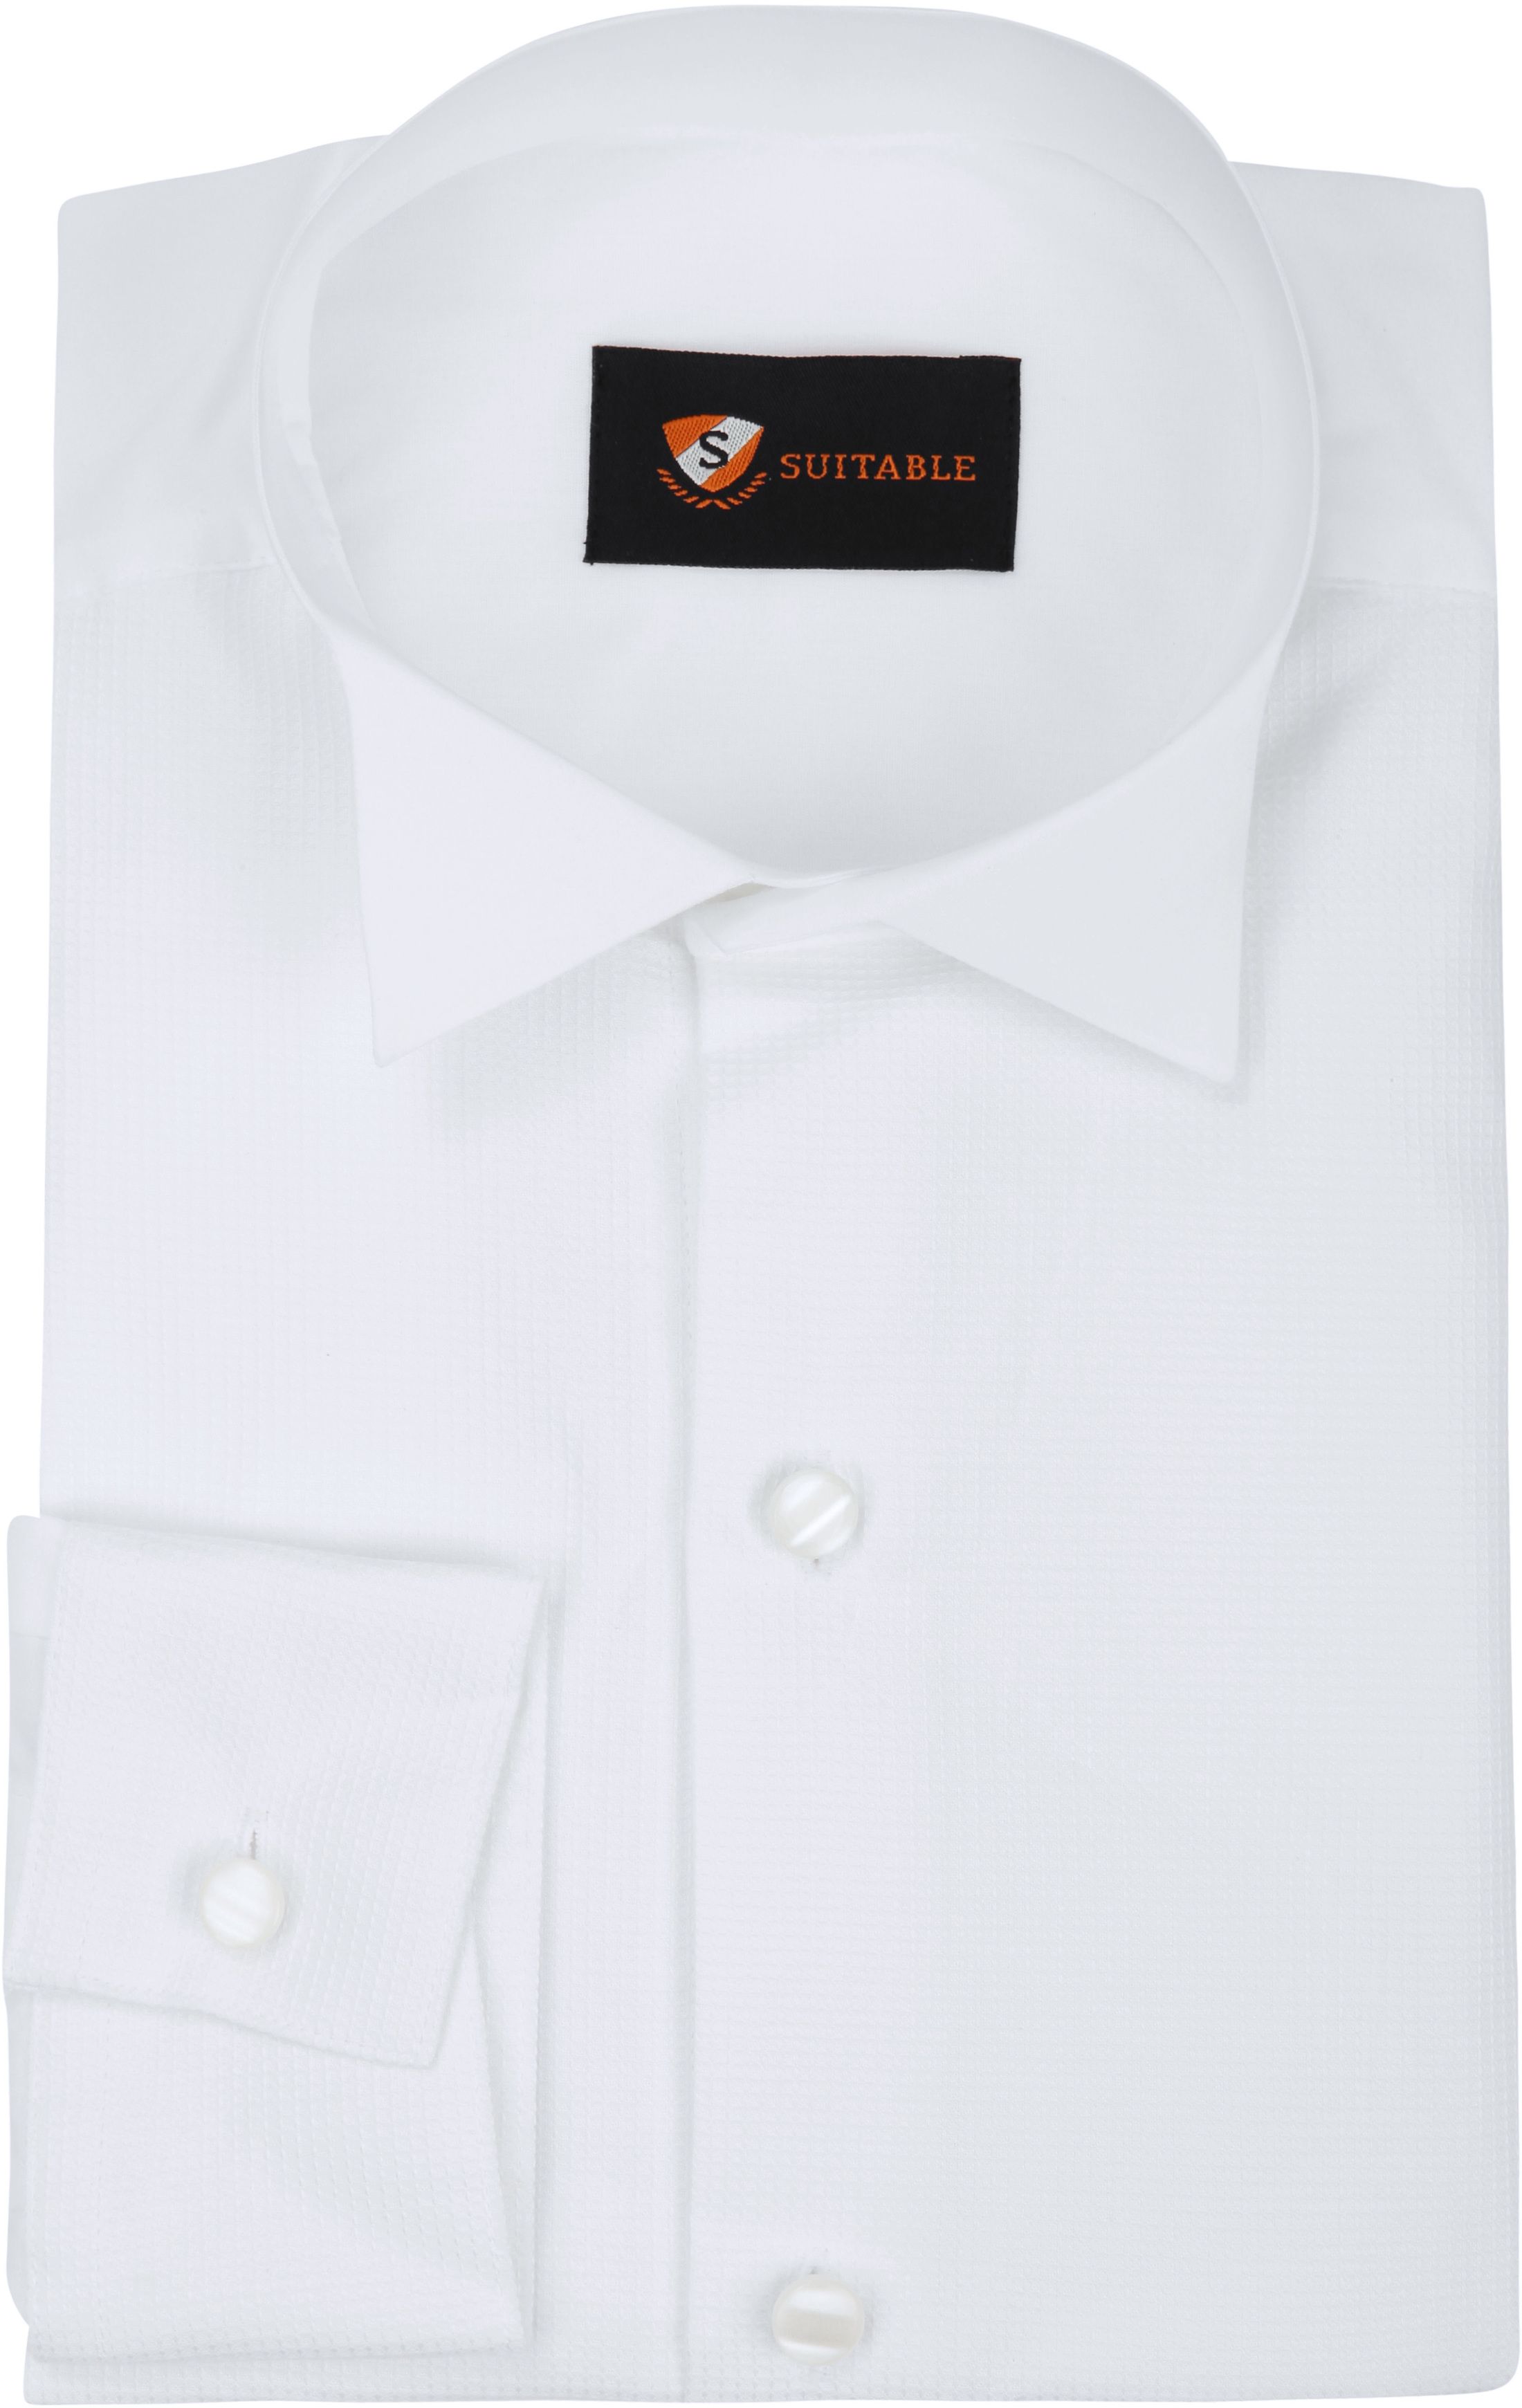 Tailcoat Shirt White size 14